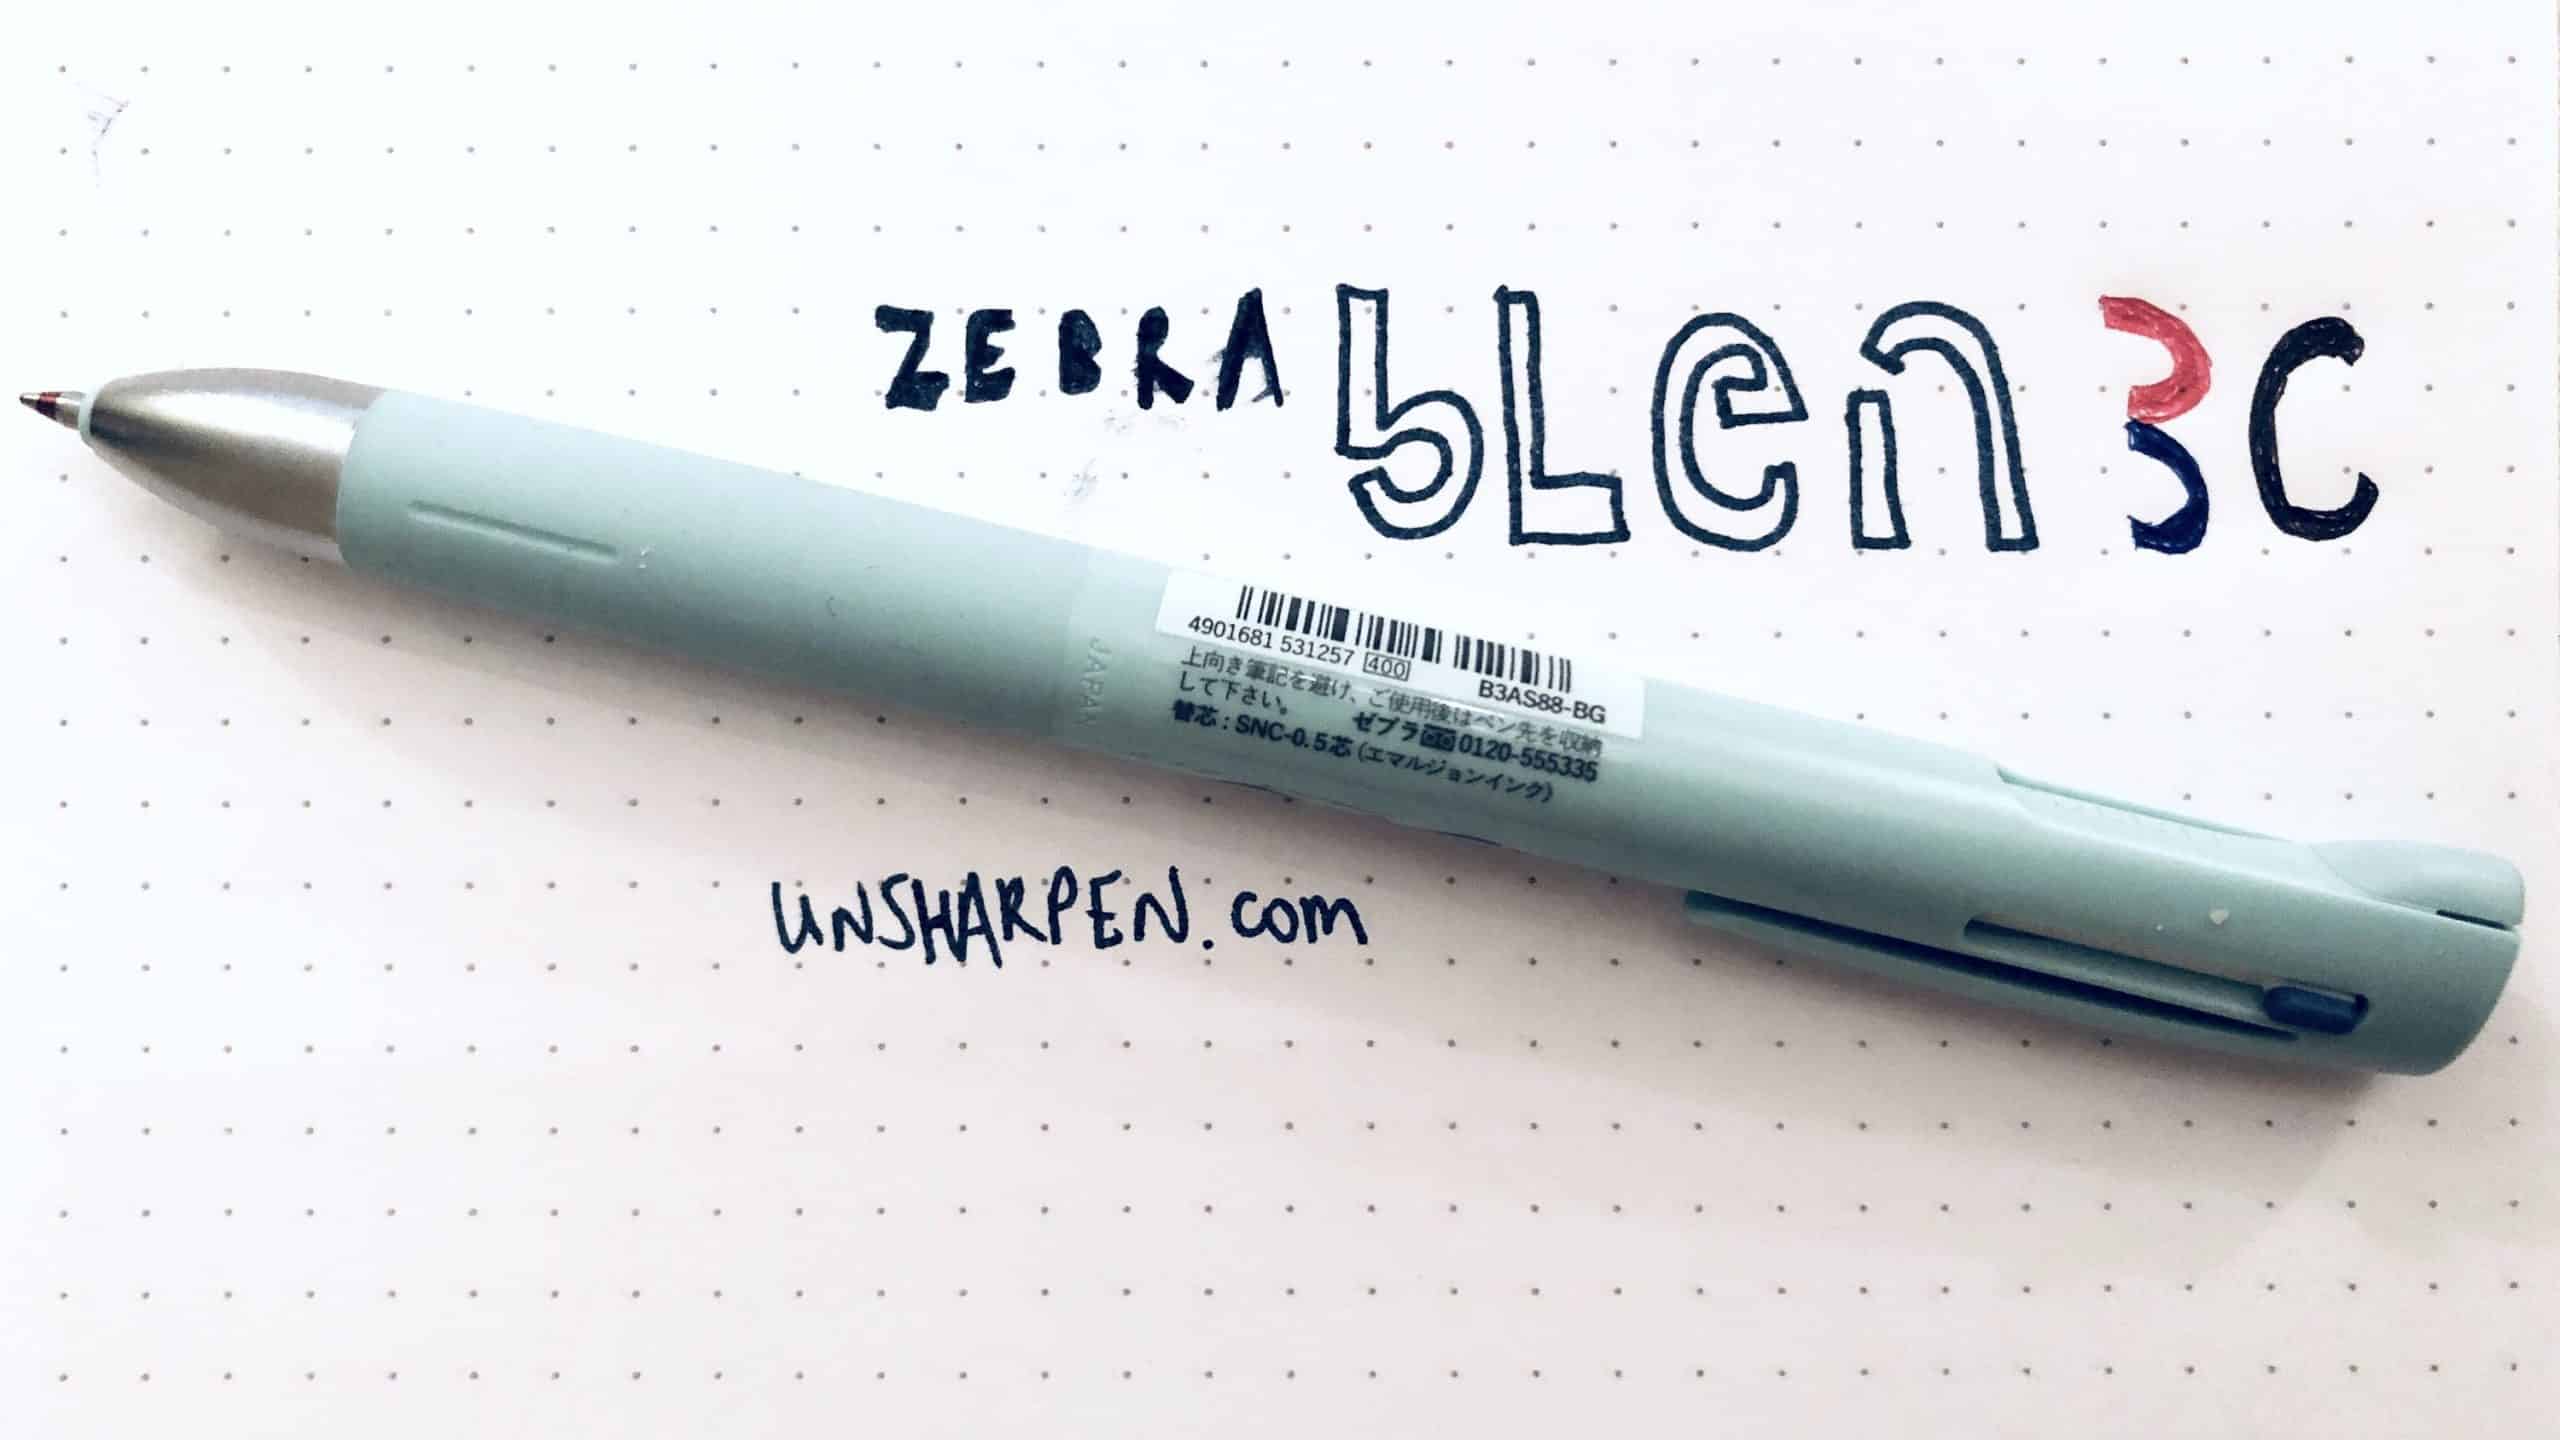 Zebra Blen 3C 3 Color Ballpoint Multi Pen - 0.5 mm - Gray